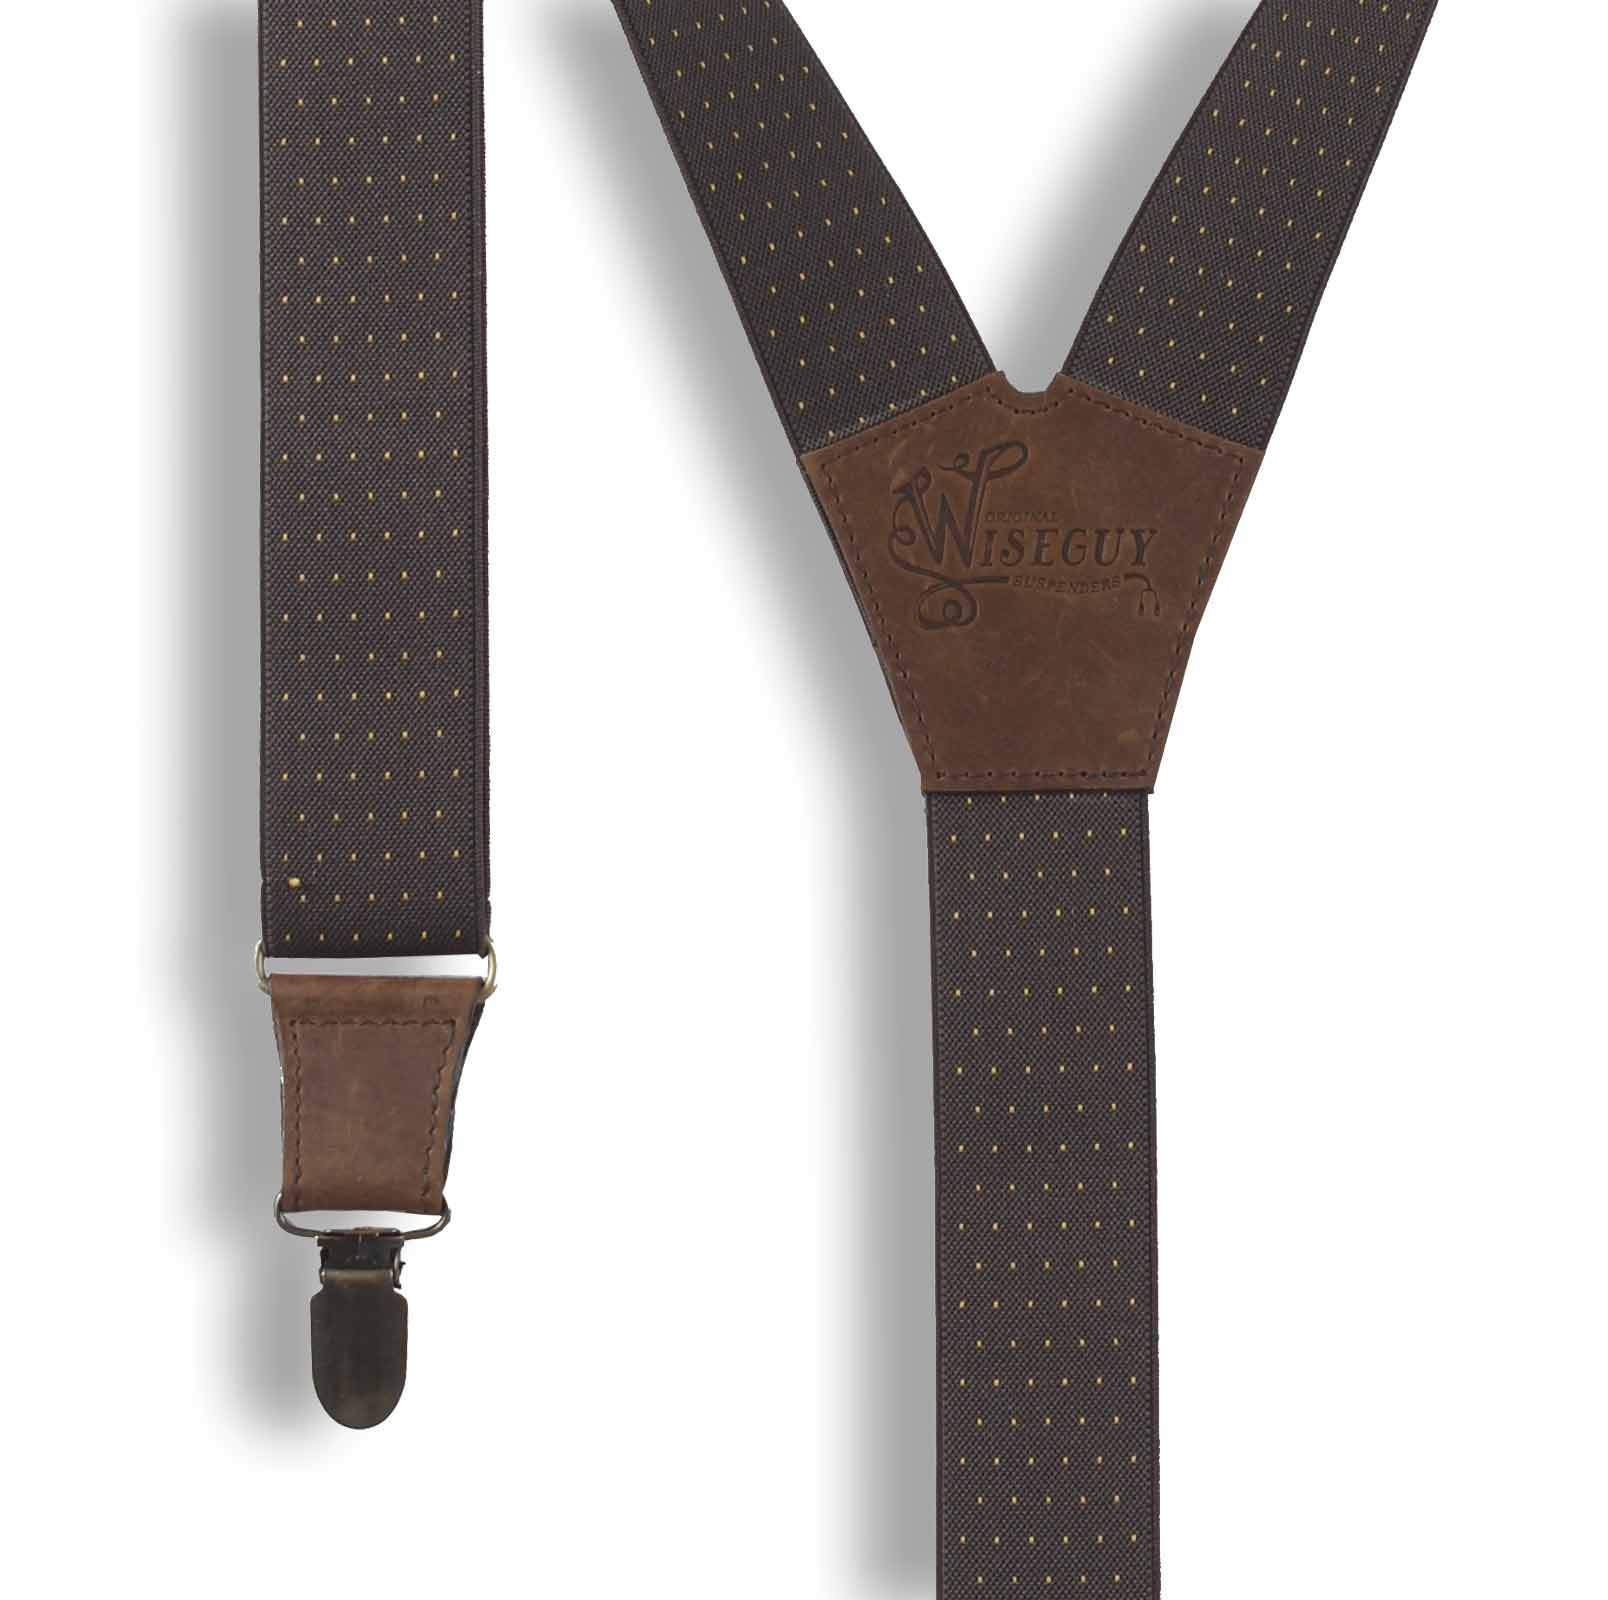 Barista formal men's Suspenders Brown with Yellow Dots 1 inch wide - Wiseguy Suspenders